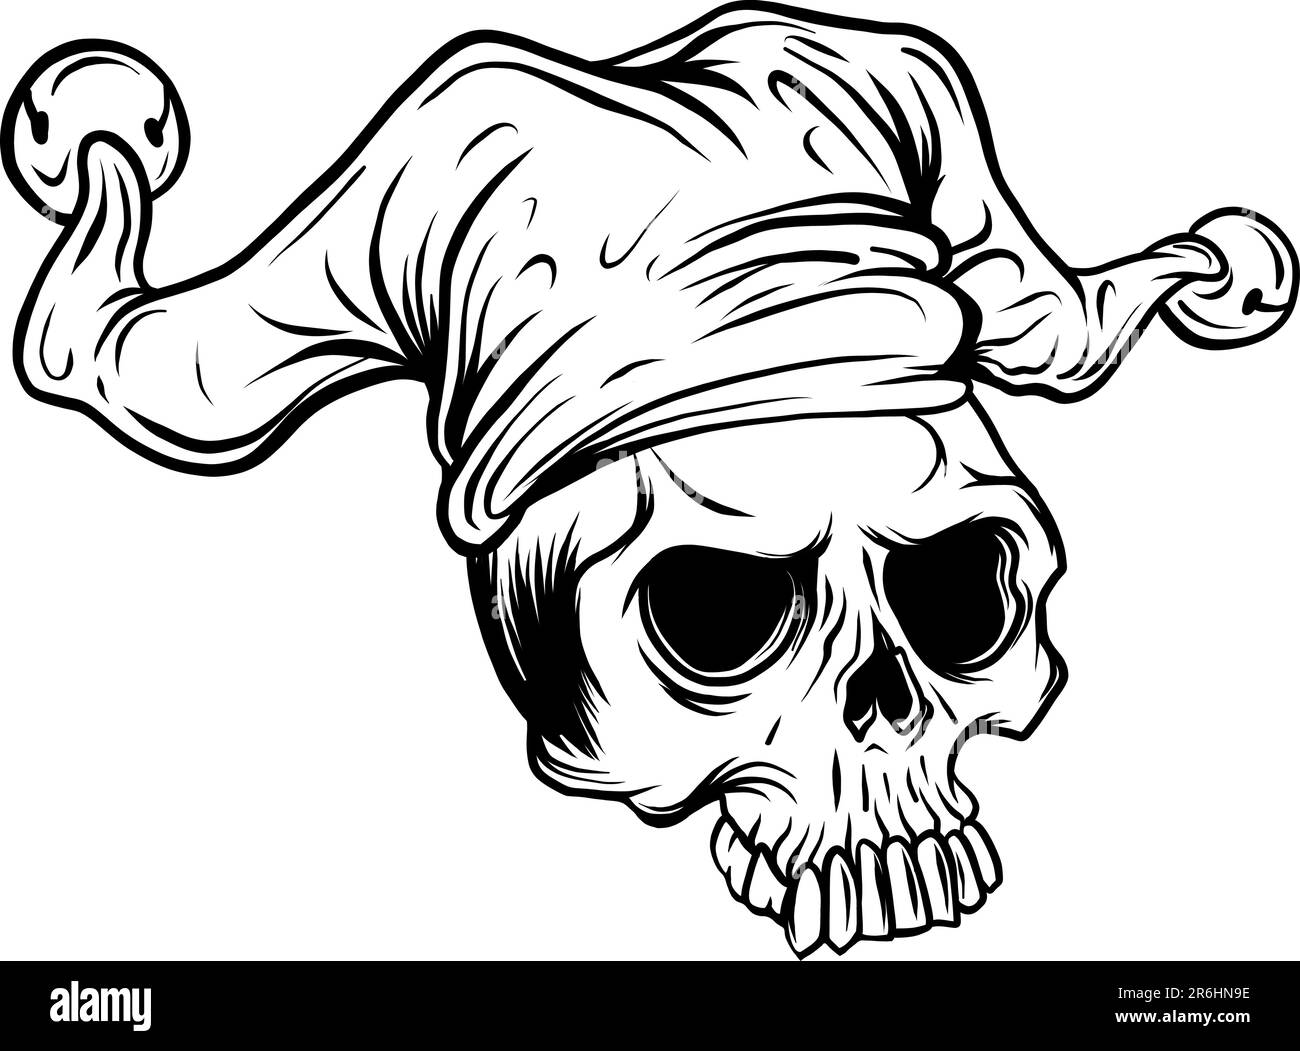 Skull in jester hat. monochrome vector illustration Stock Vector